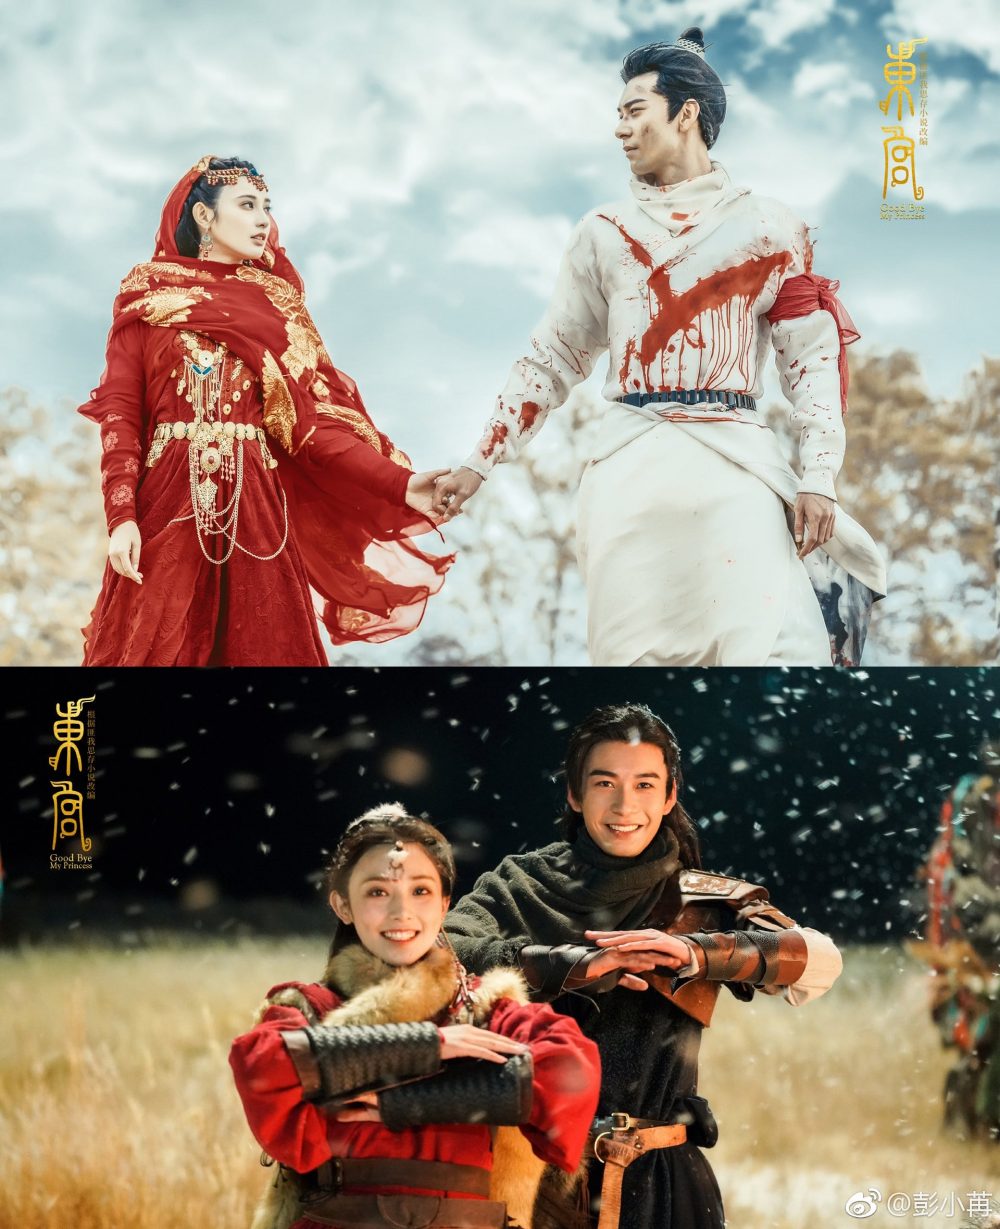 Phim chuyển thể từ tiểu thuyết: Đông cung - Goodbye My Princess (2019)